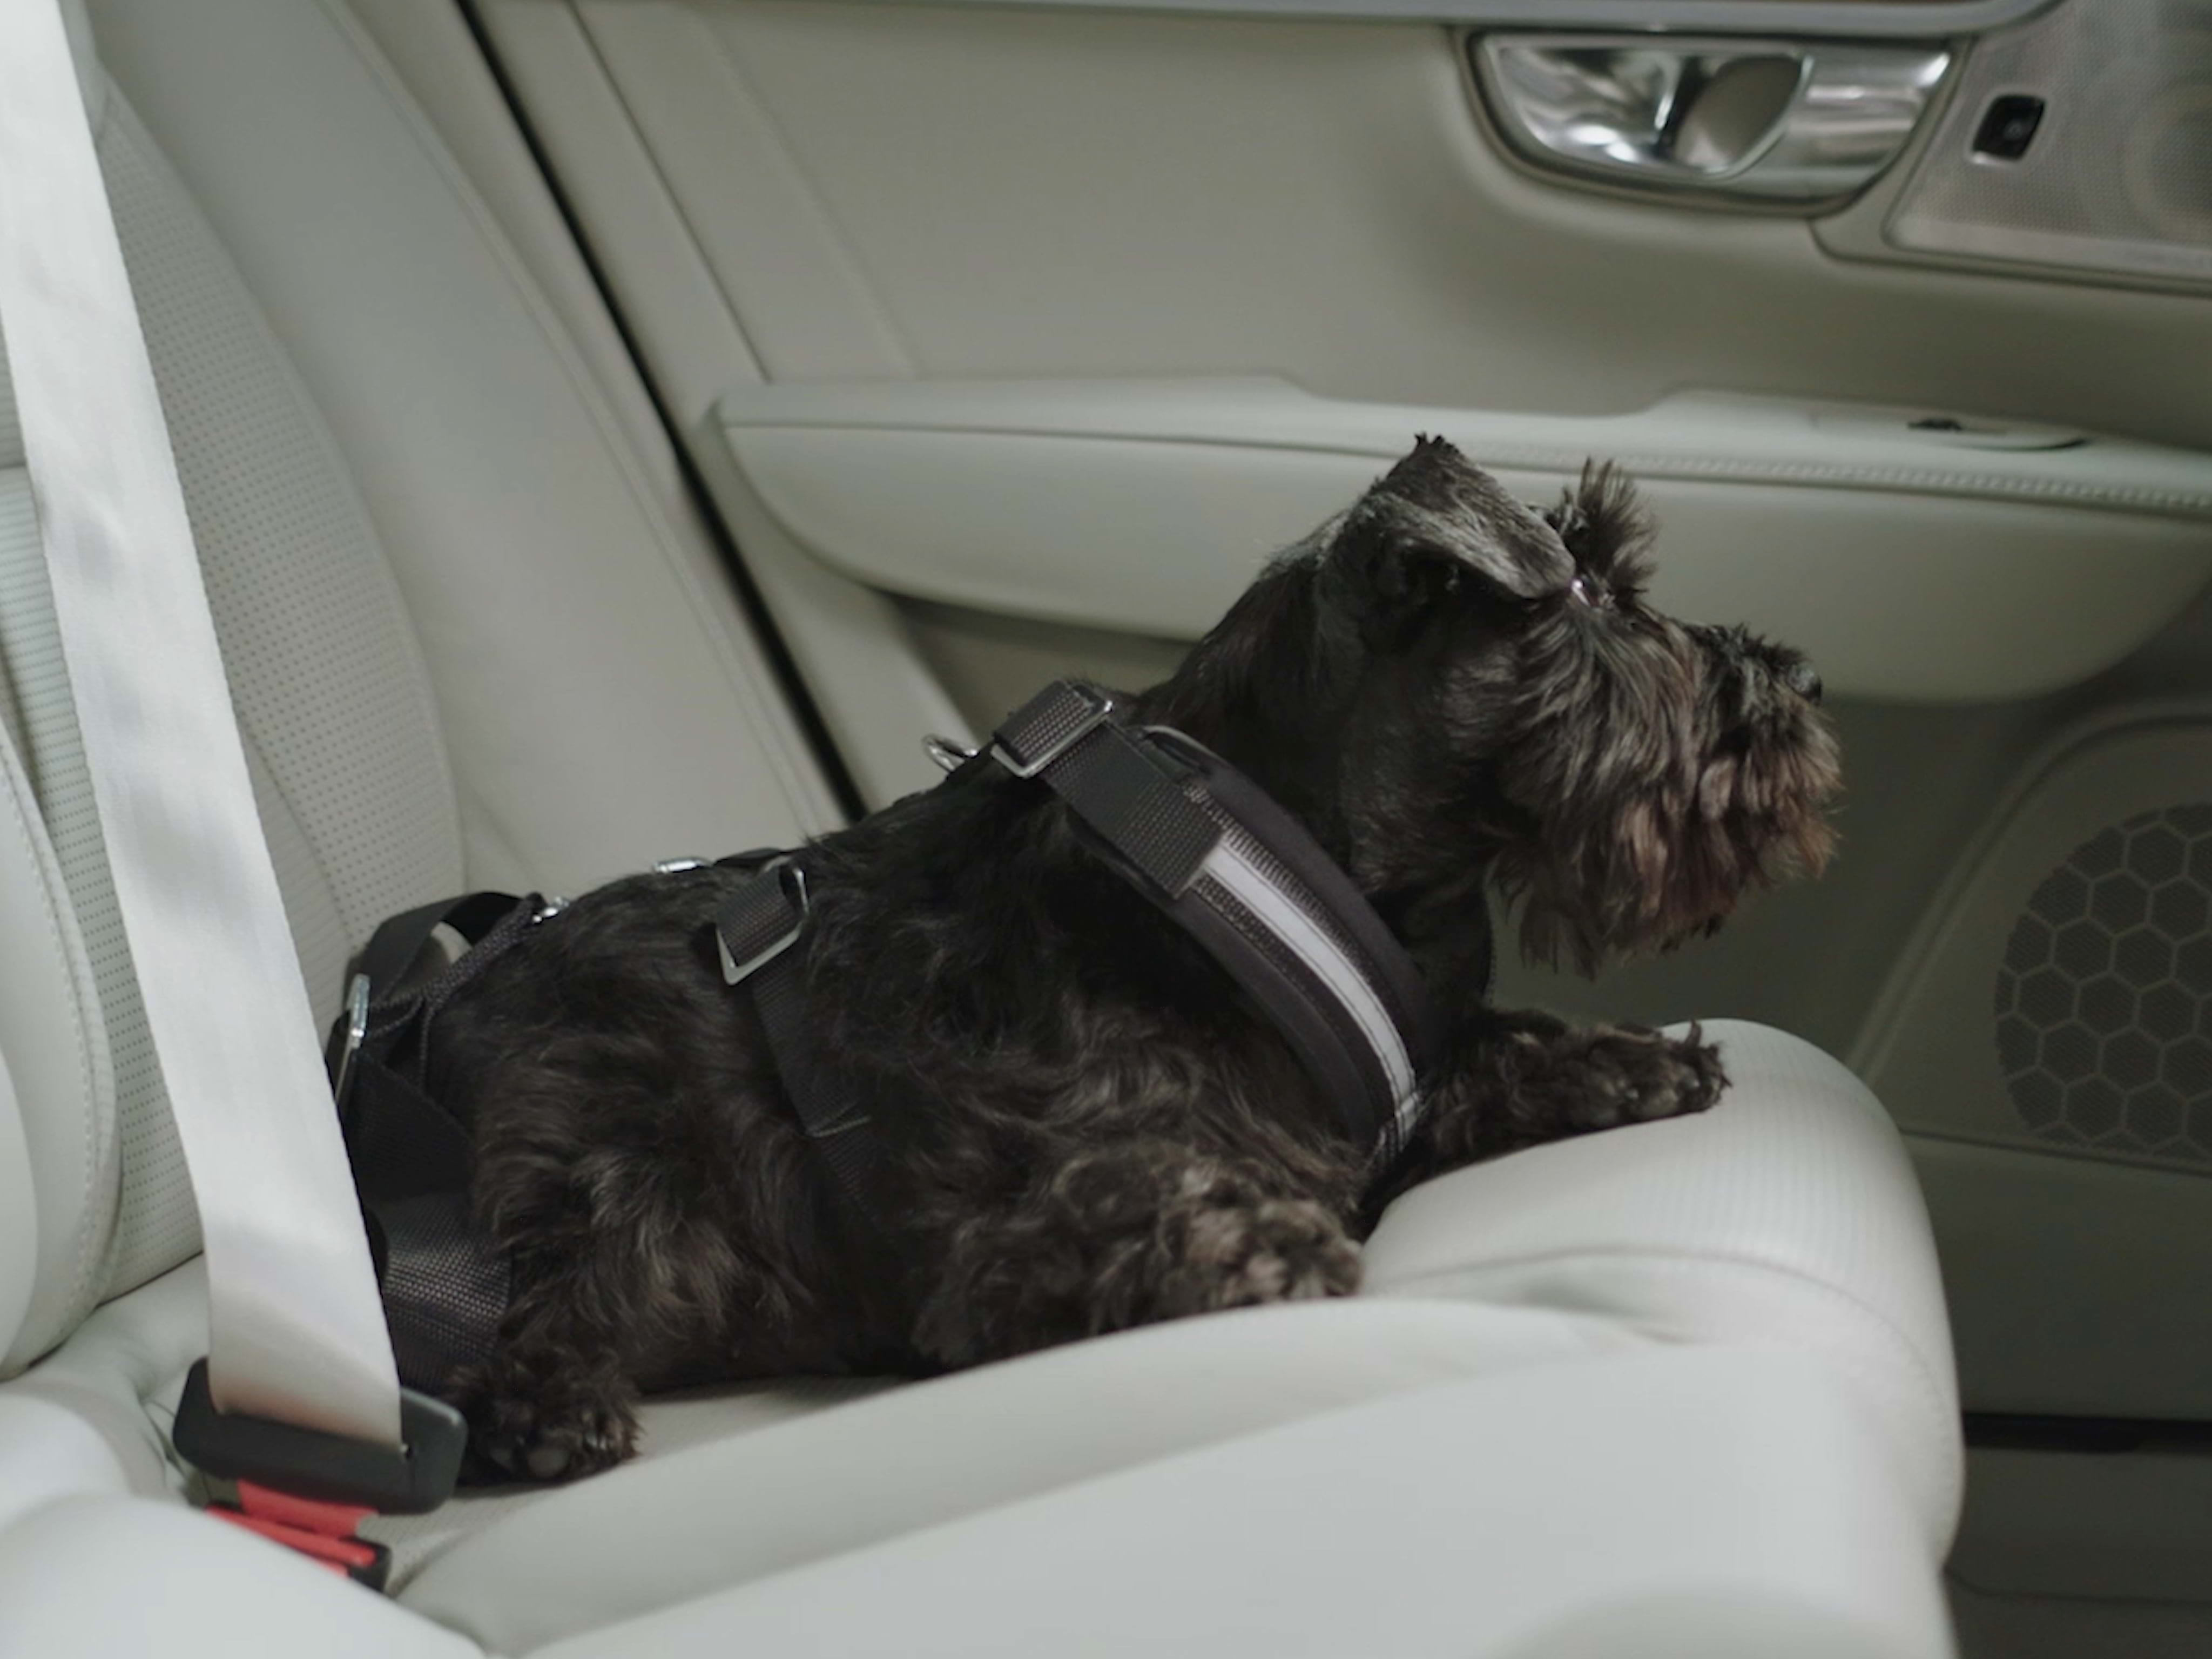 Egy skót terrier nyugodtan ül a Volvo Cars hivatalos tartozékaként kapható speciális kutyahámba csatolva.